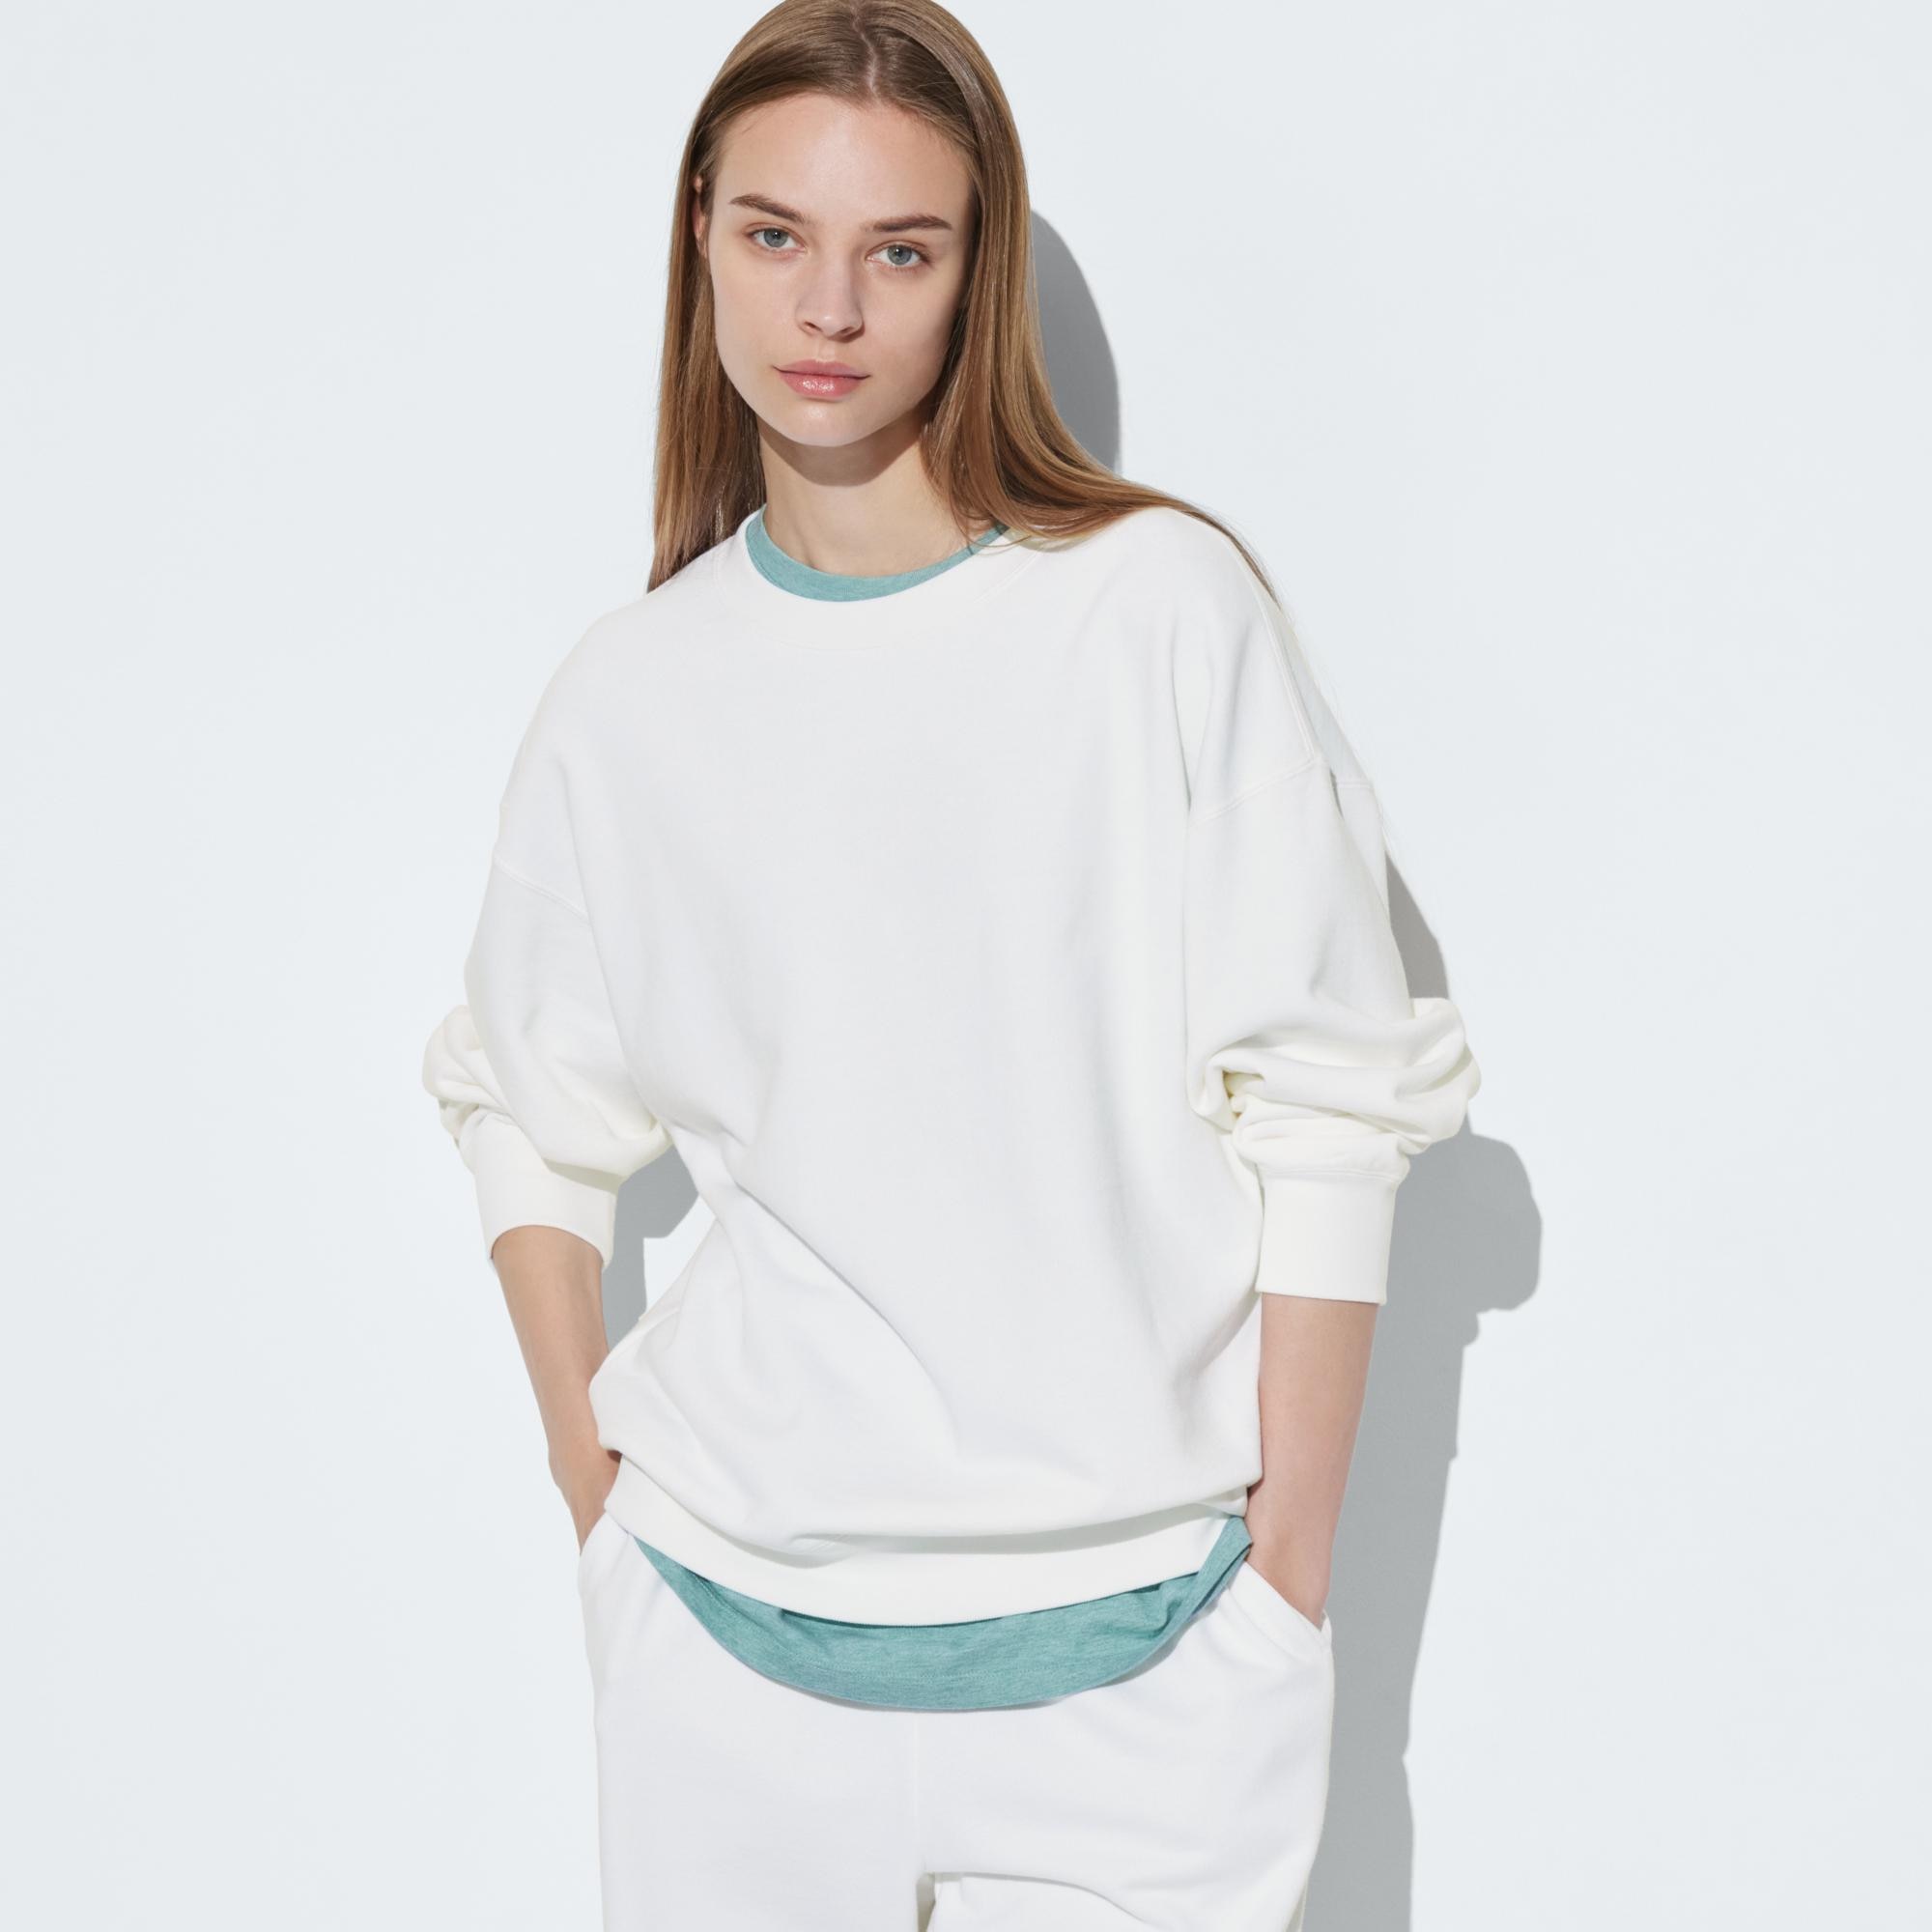 ロングスリーブtシャツ サイズ感の関連商品 | ユニクロ